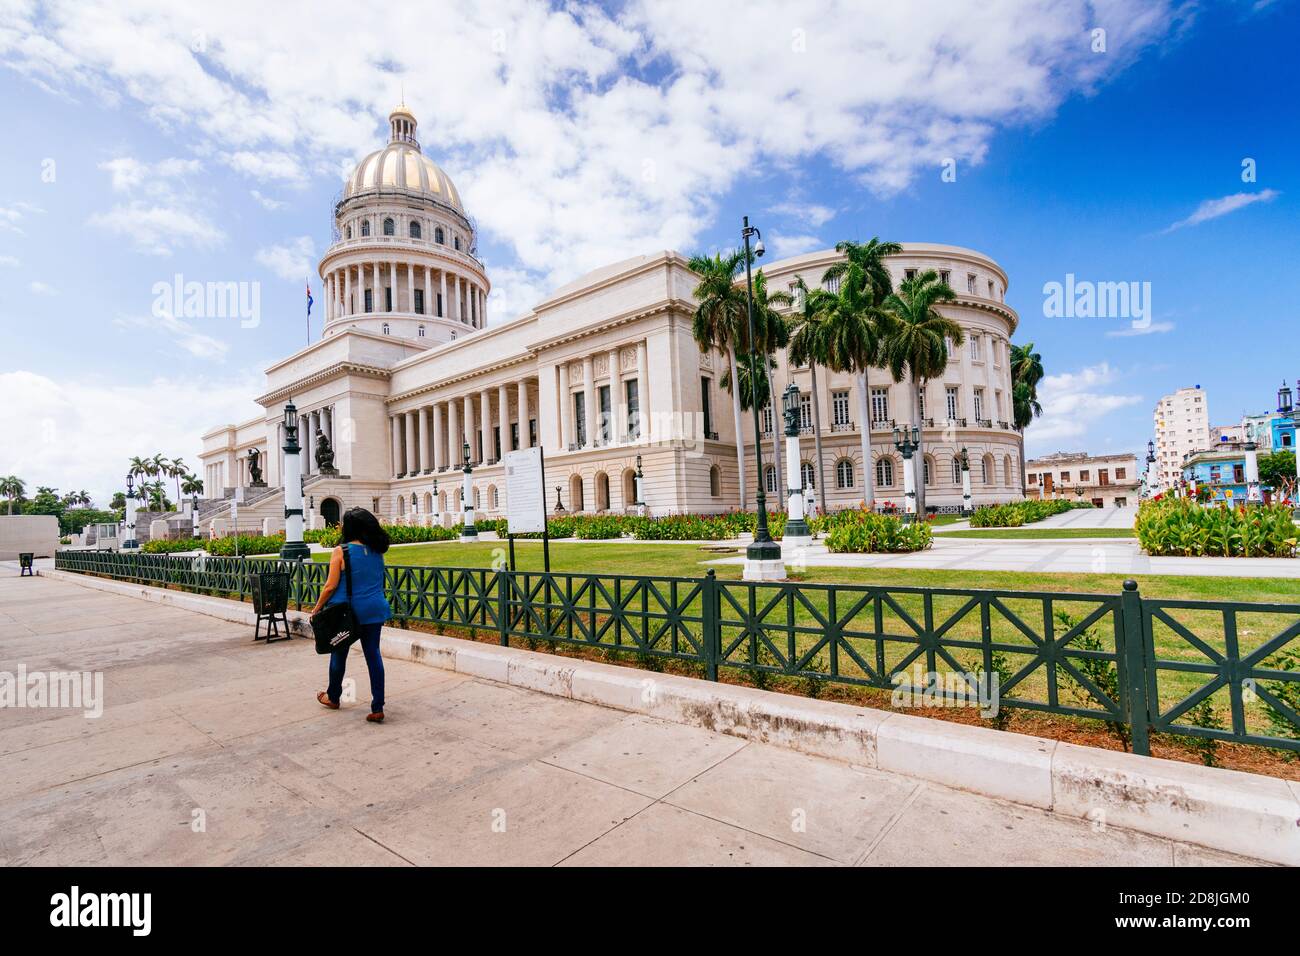 El Capitolio, o il Campidoglio Nazionale - Capitolio Nacional de la Habana - è un edificio pubblico e uno dei siti più visitati a l'Avana, ca Foto Stock